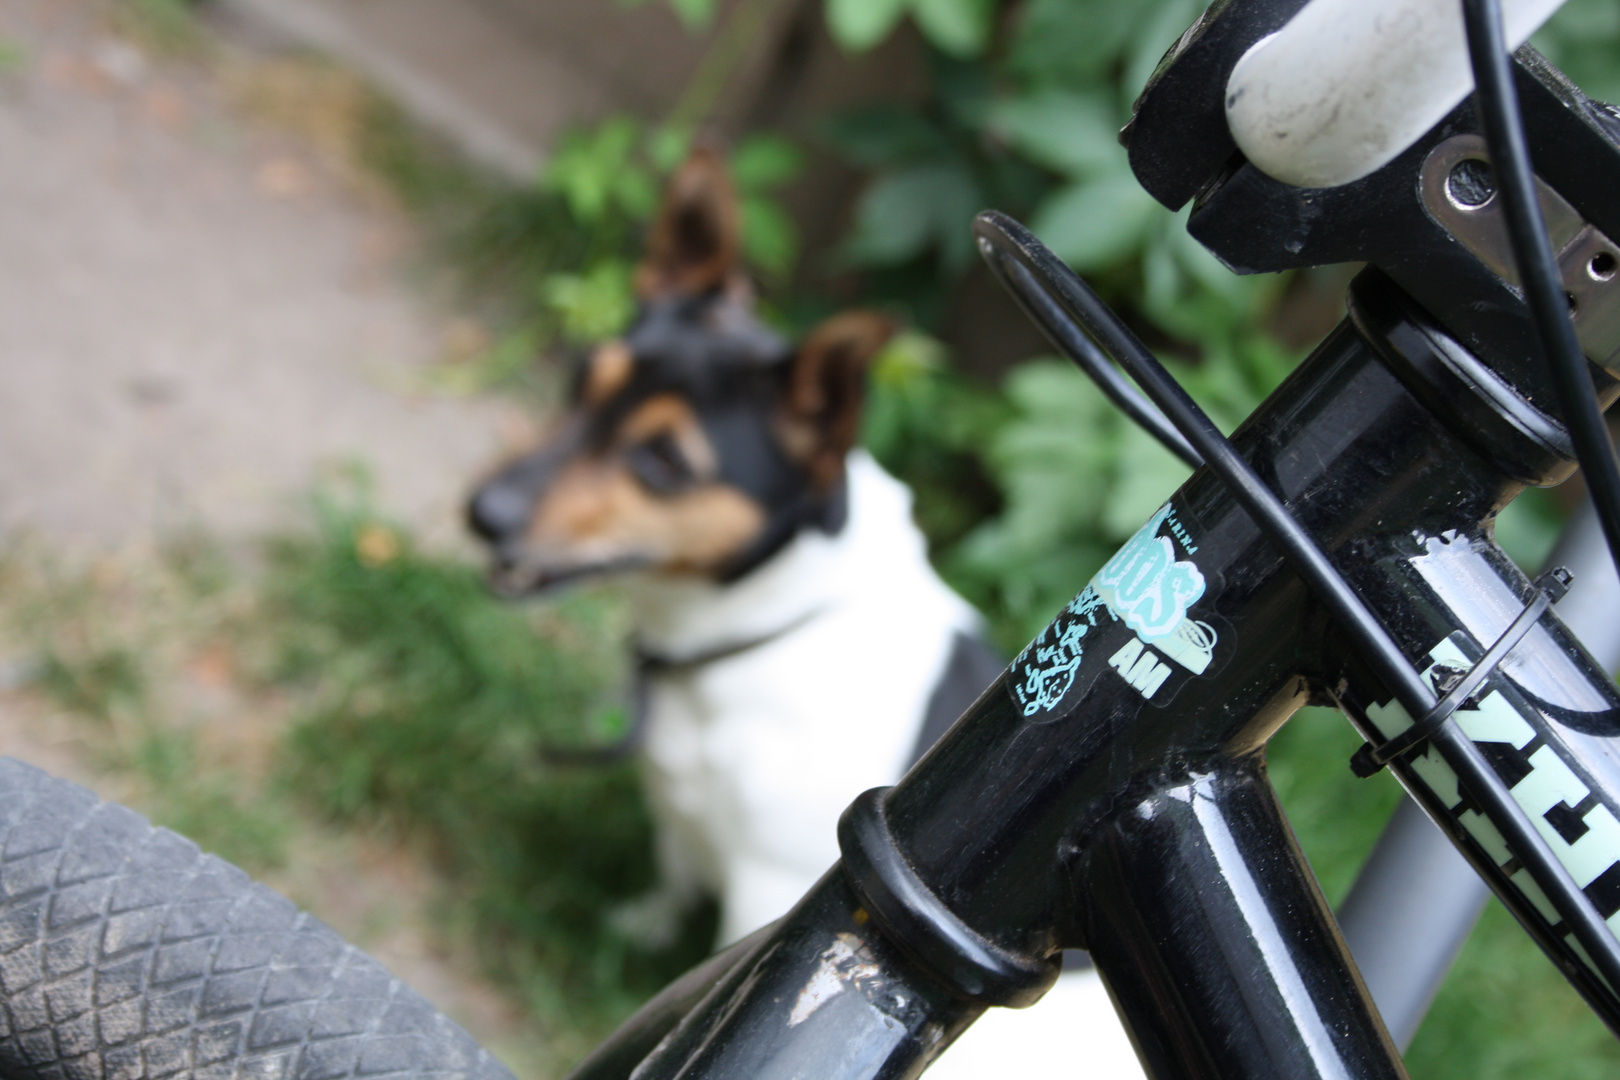 Mein Hund & Meiin BMX stand qerade aLLezs so qeiiL (;